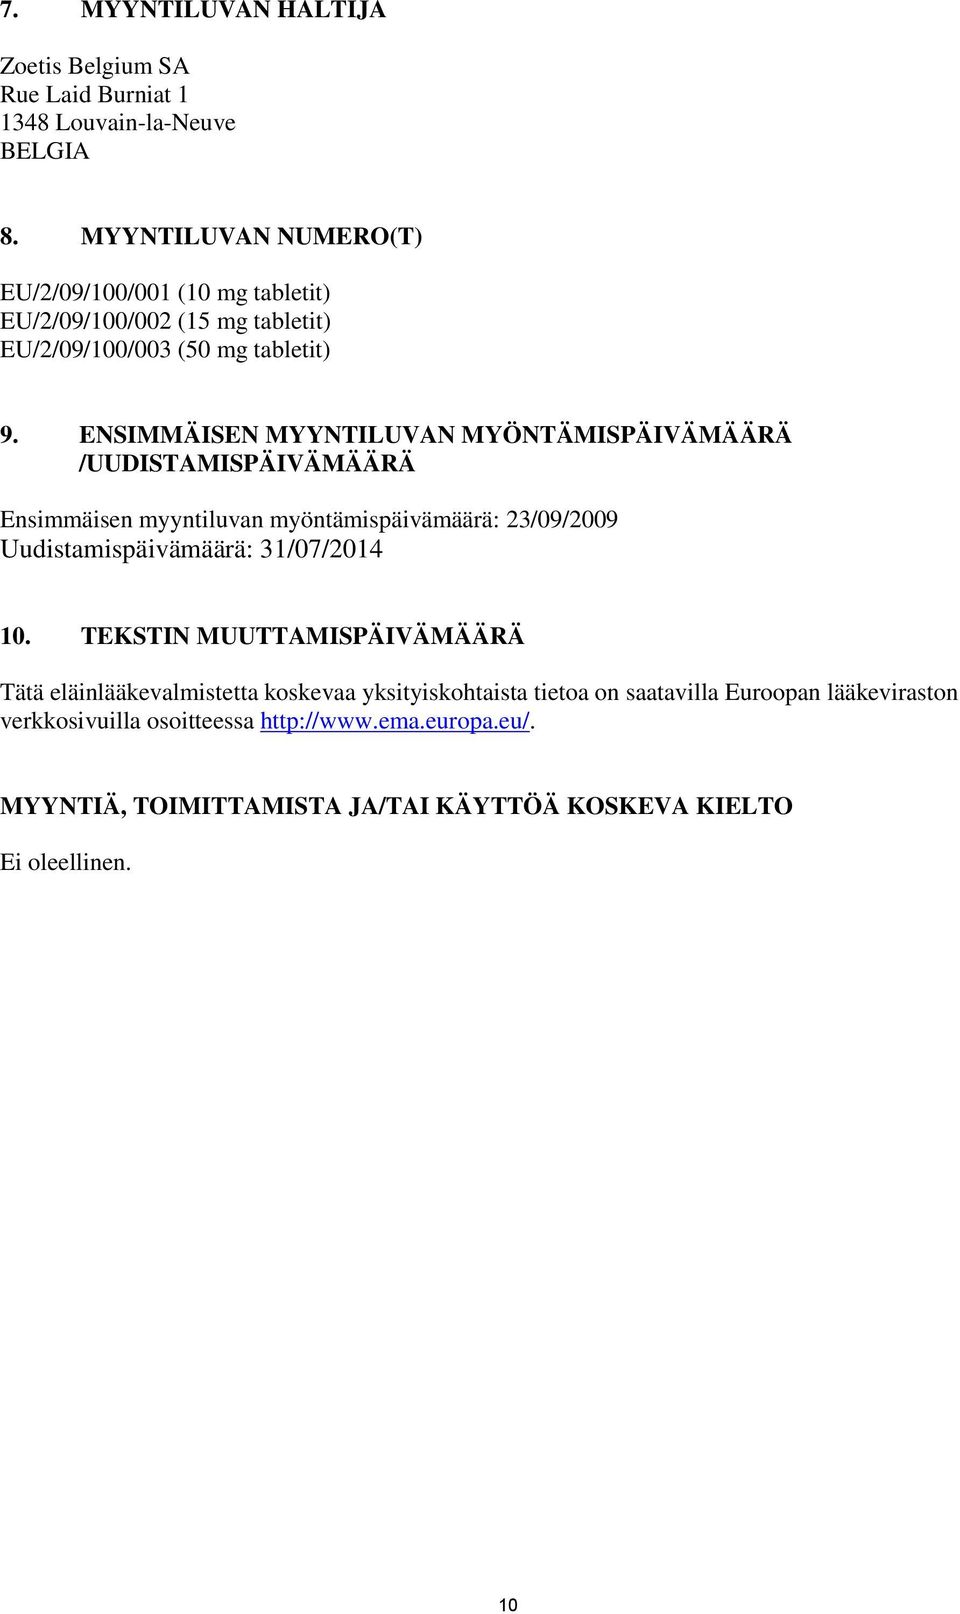 ENSIMMÄISEN MYYNTILUVAN MYÖNTÄMISPÄIVÄMÄÄRÄ /UUDISTAMISPÄIVÄMÄÄRÄ Ensimmäisen myyntiluvan myöntämispäivämäärä: 23/09/2009 Uudistamispäivämäärä: 31/07/2014